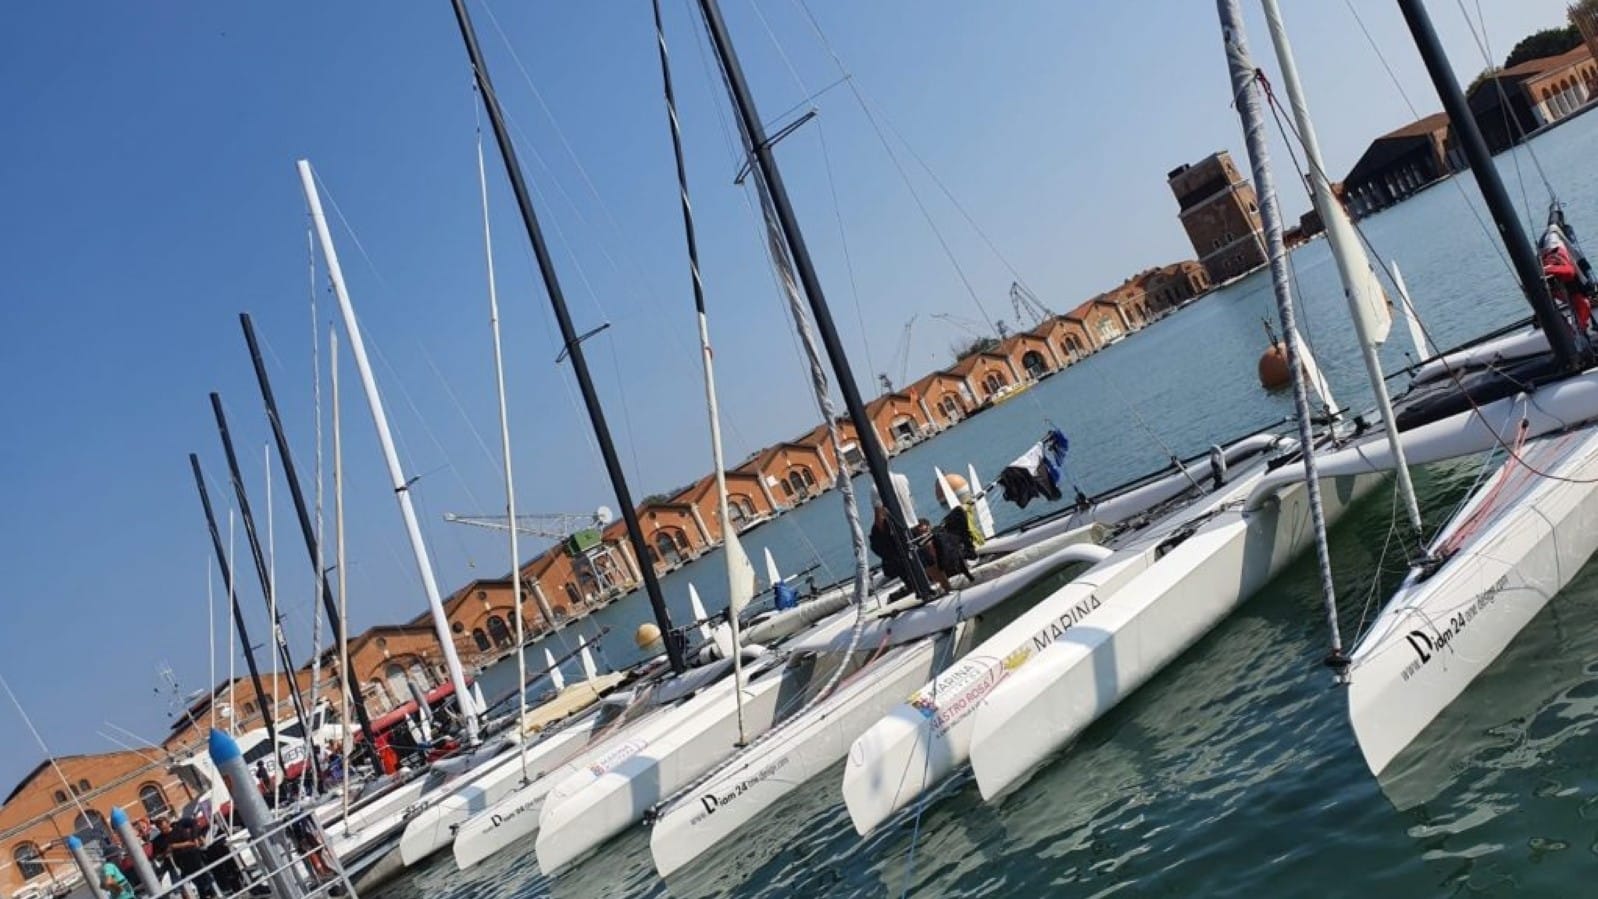 Arsenale Venice Boat Show